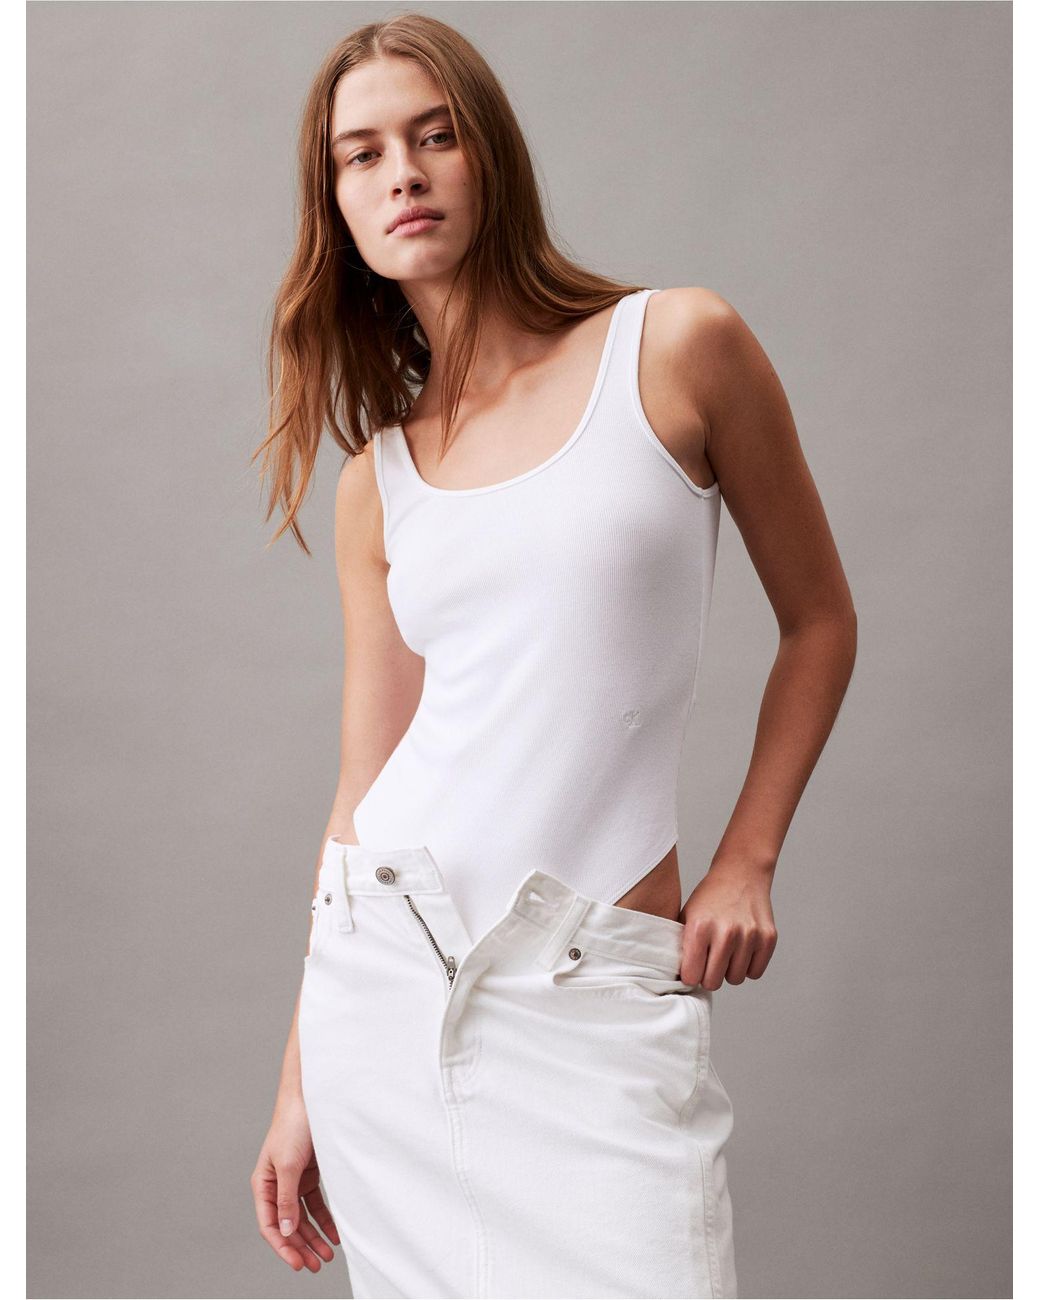 Calvin Klein Contour Rib Bodysuit in White